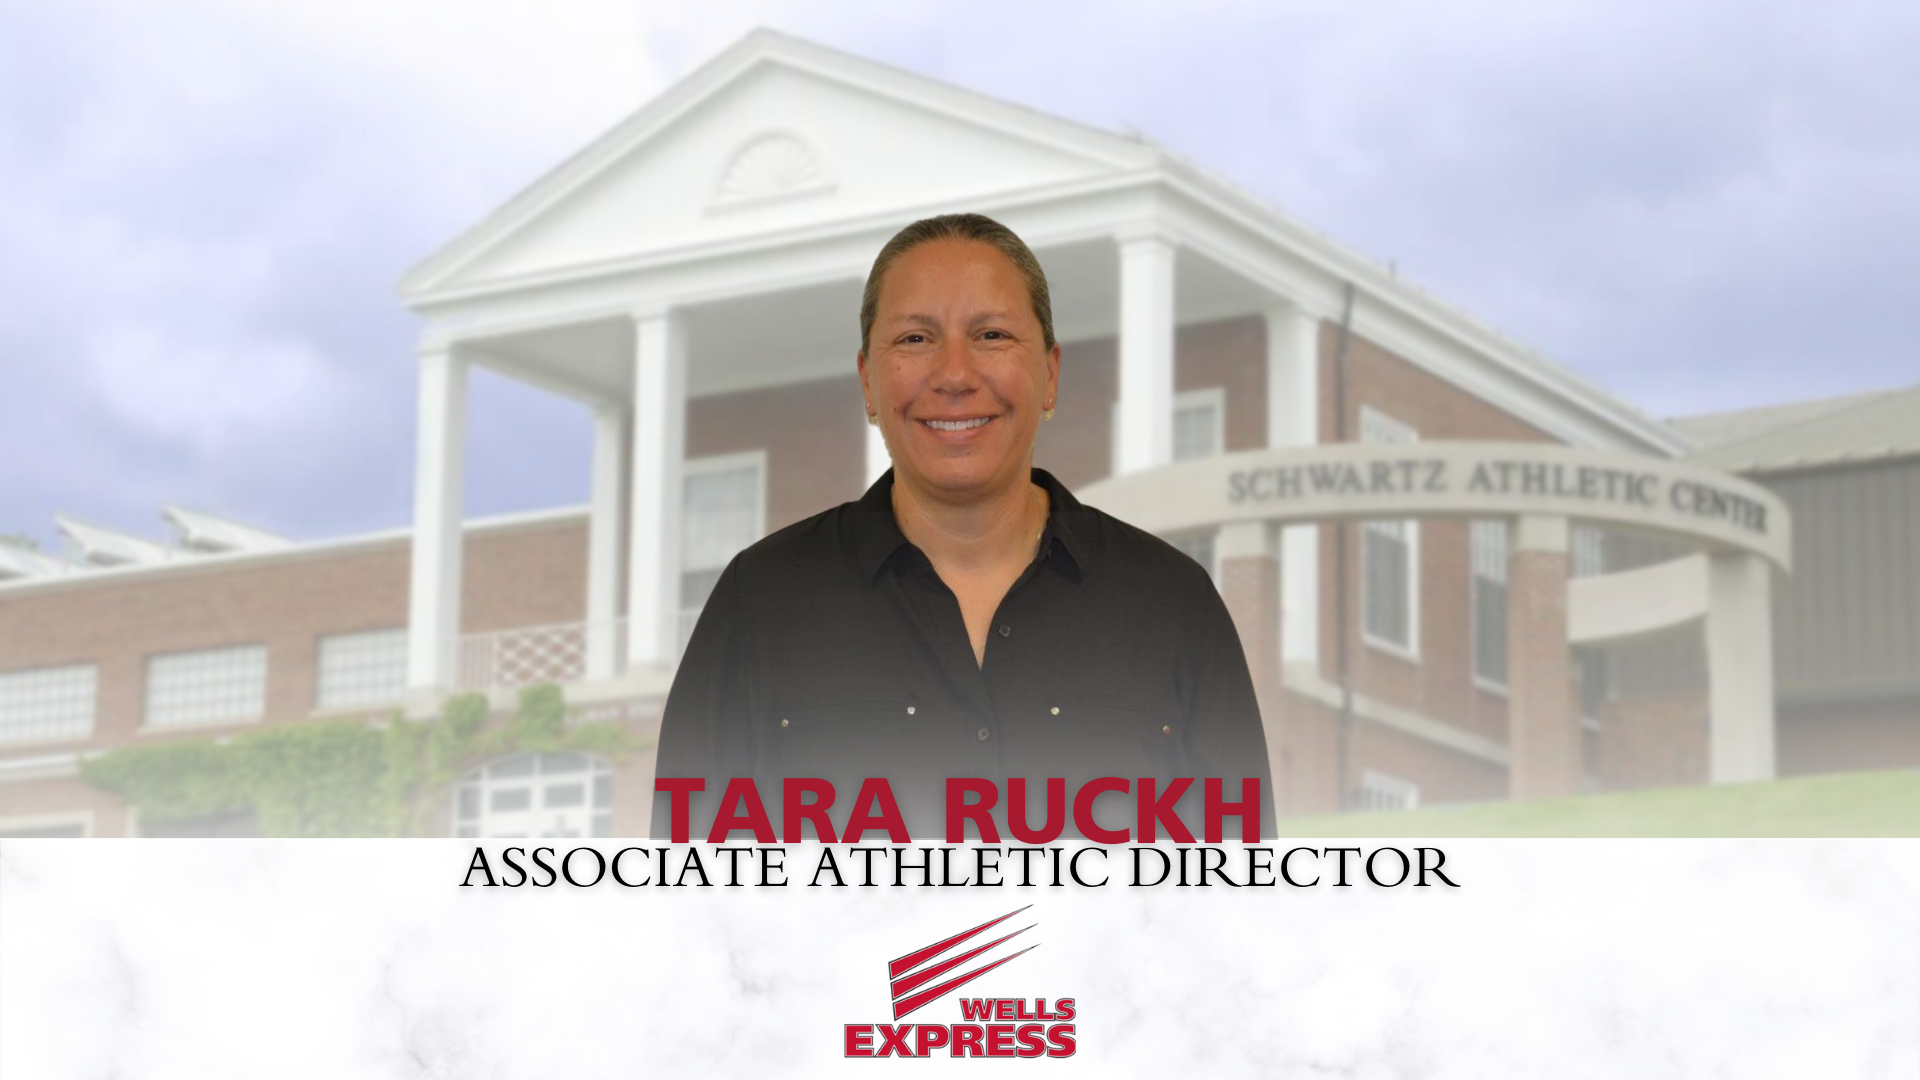 Tara Ruckh Named Associate Athletic Director